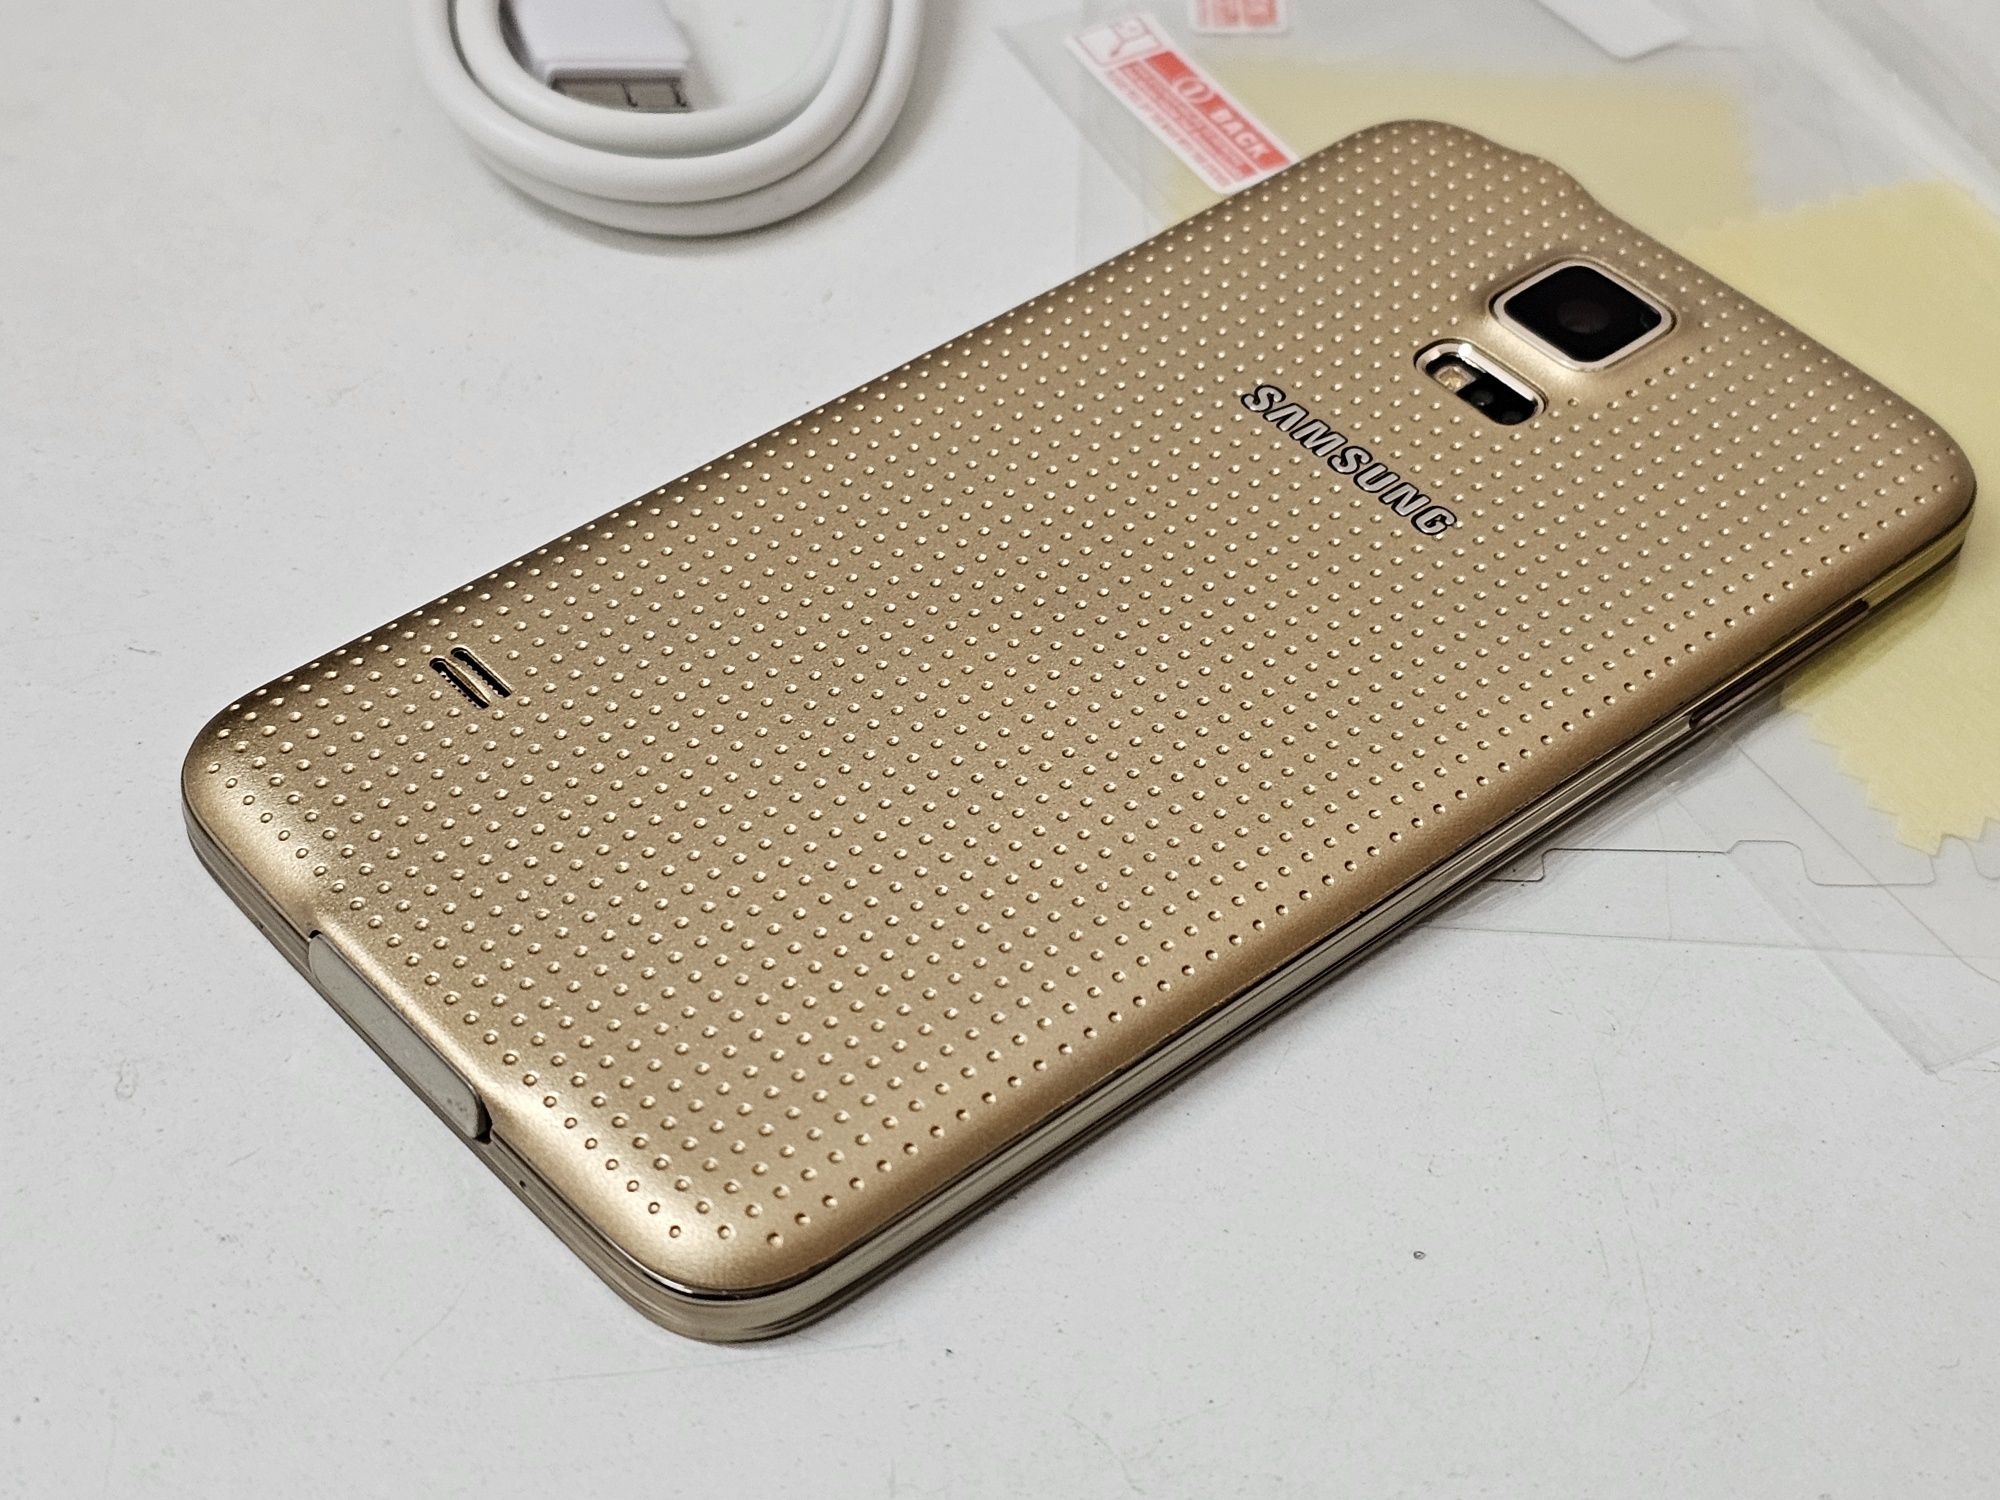 Samsung galaxy s5 fabrycznie nowy